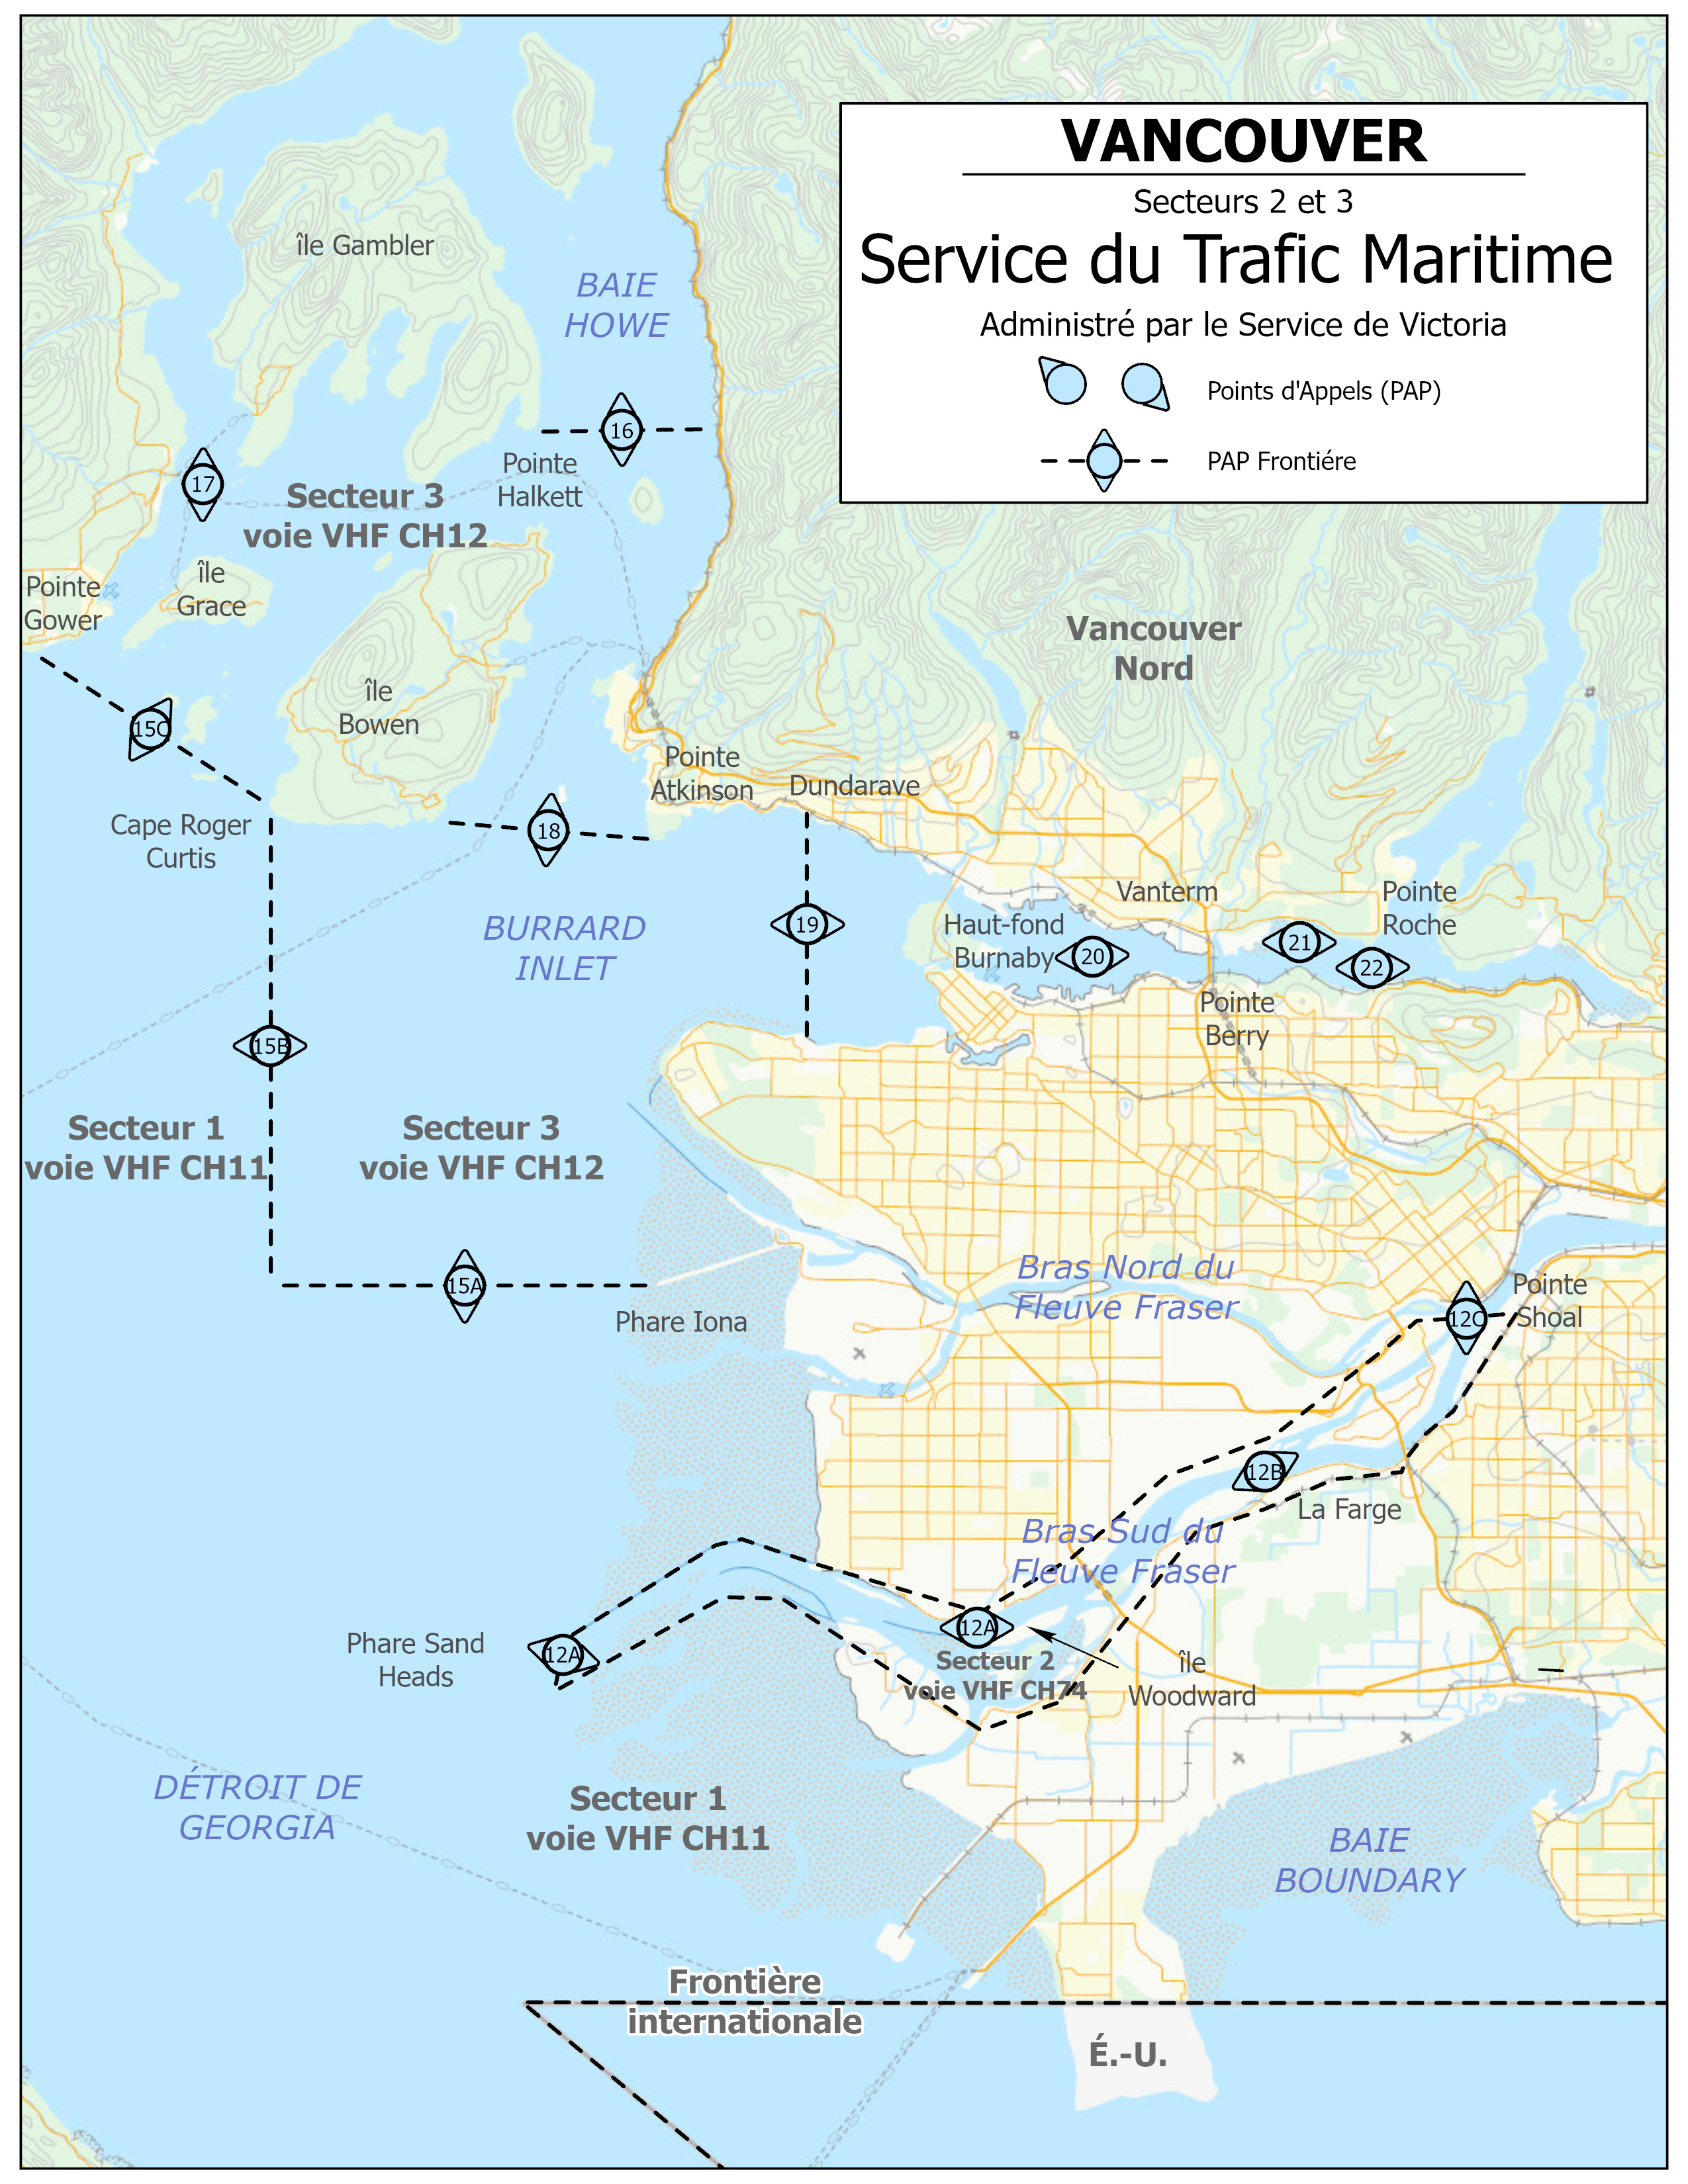 Vancouver - Service du trafic maritime - Secteur 2 et 3